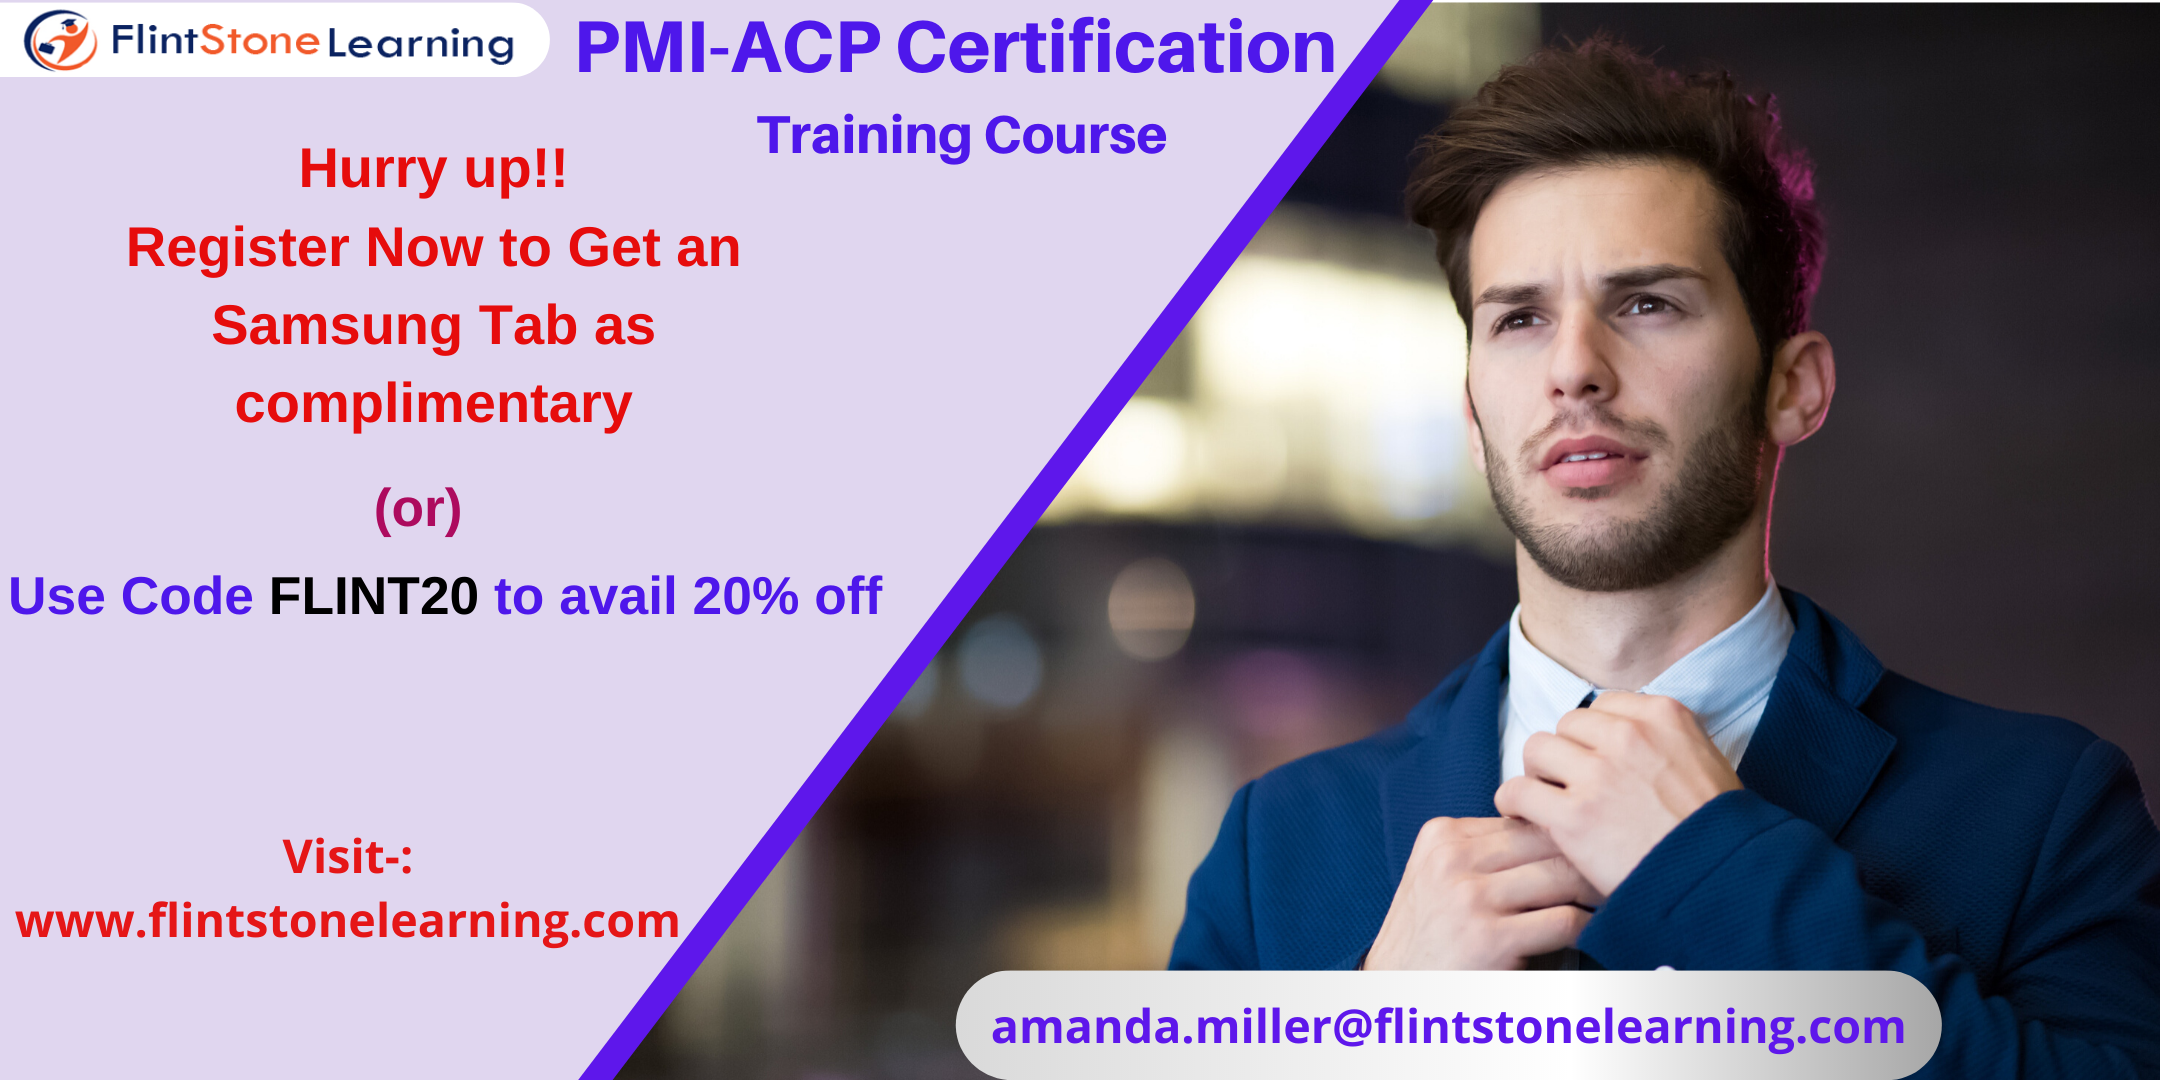 PMI-ACP Certification Training Course in Cambridge, MA